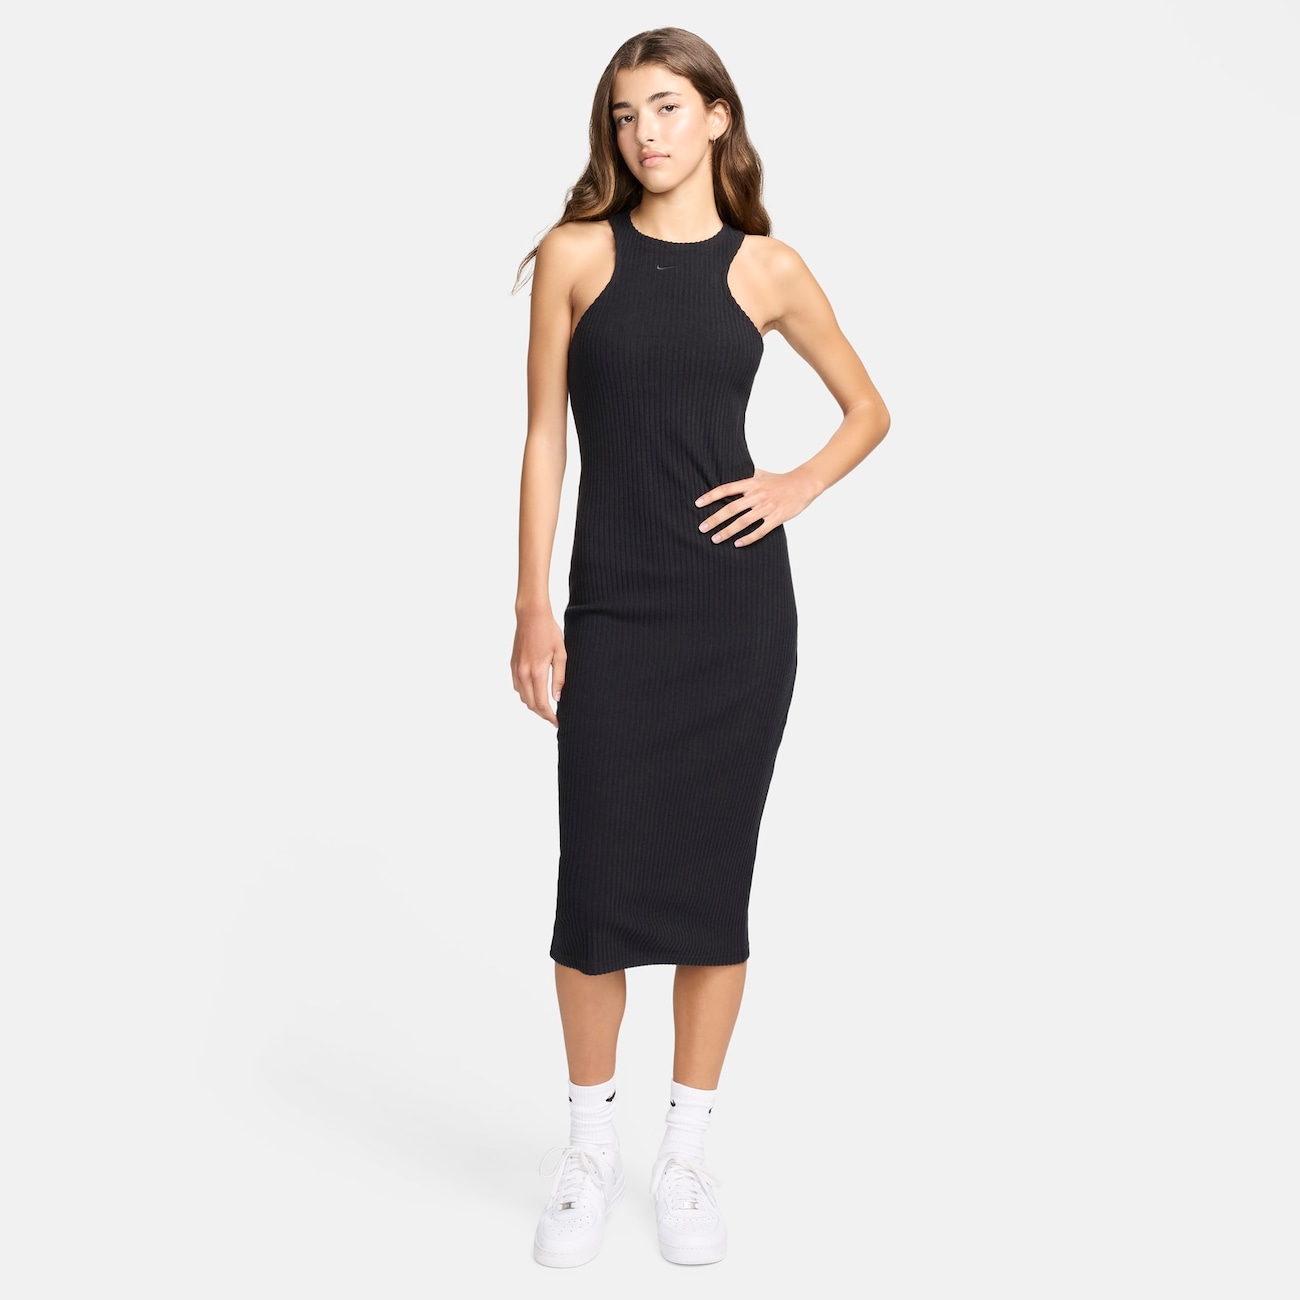 Vestido Nike Sportswear Knit Feminino